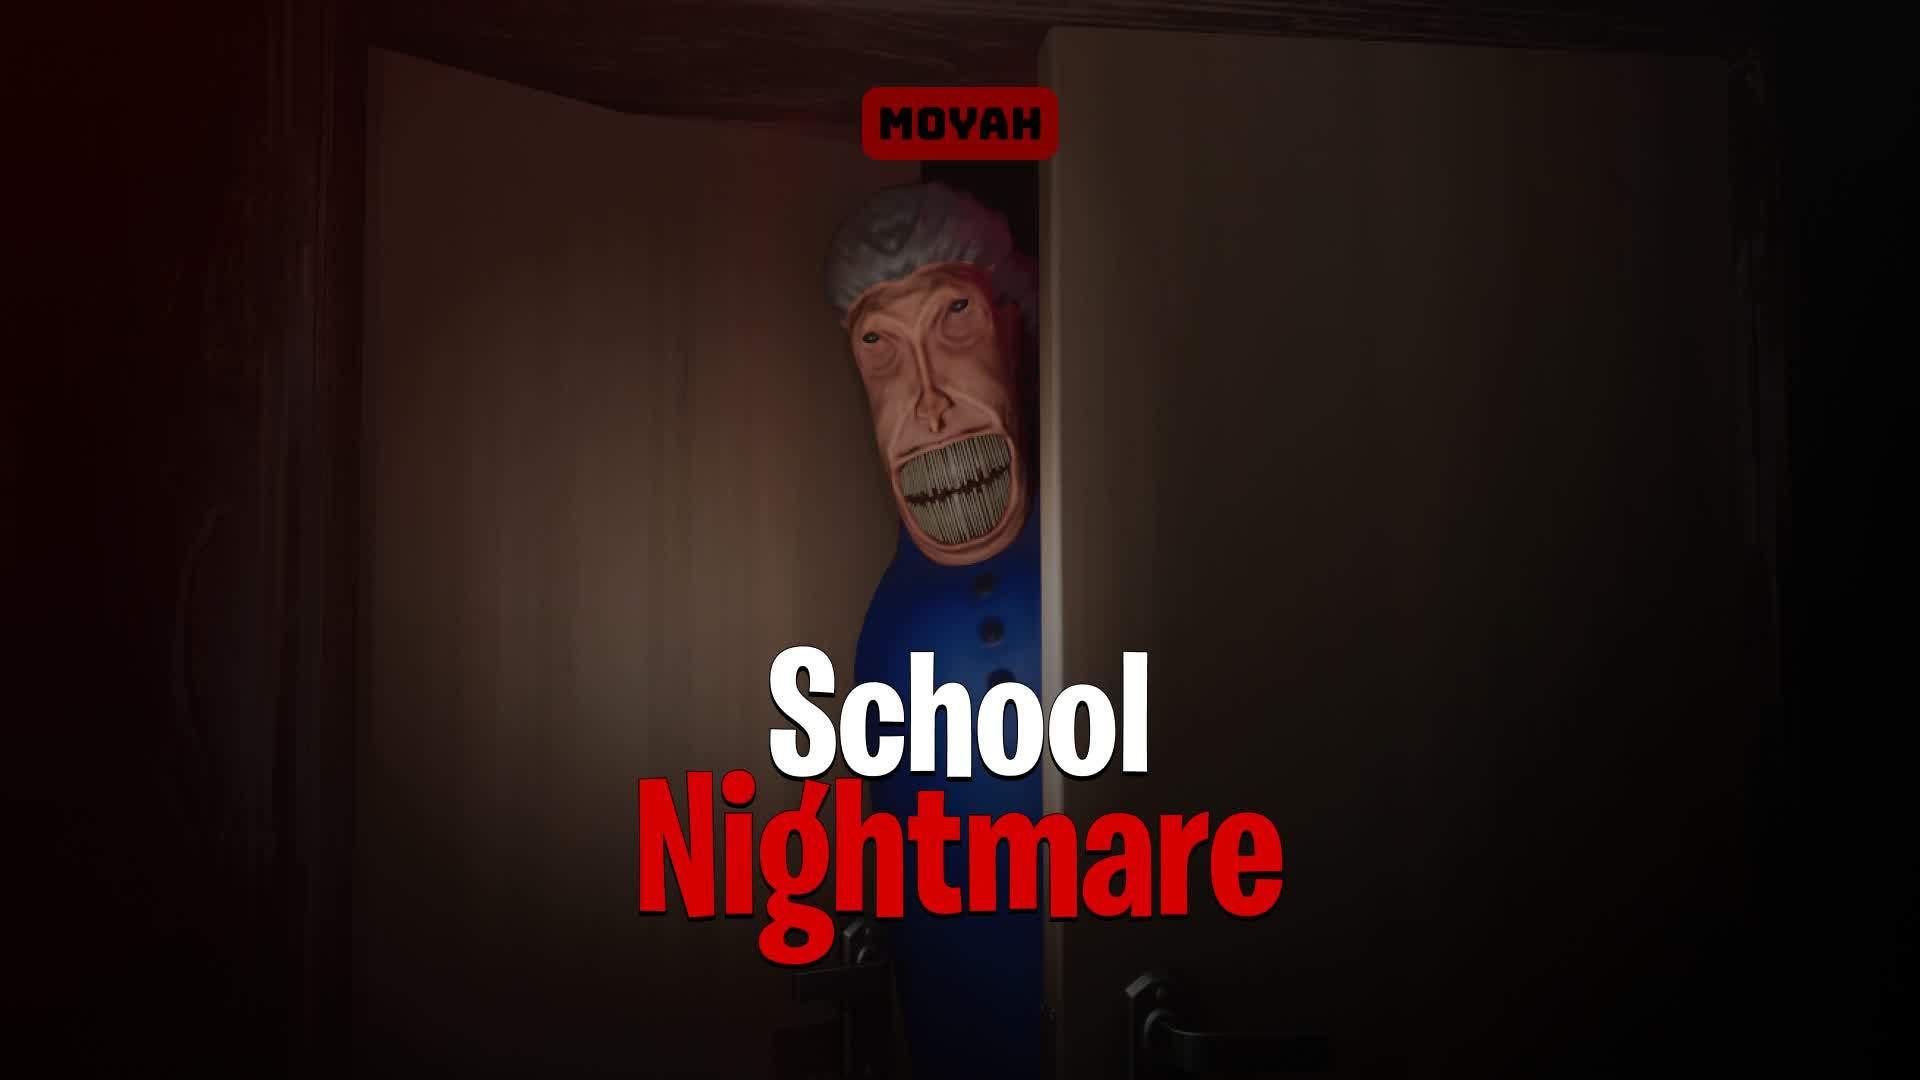 School Nightmare [HORROR] 6145-5465-4234